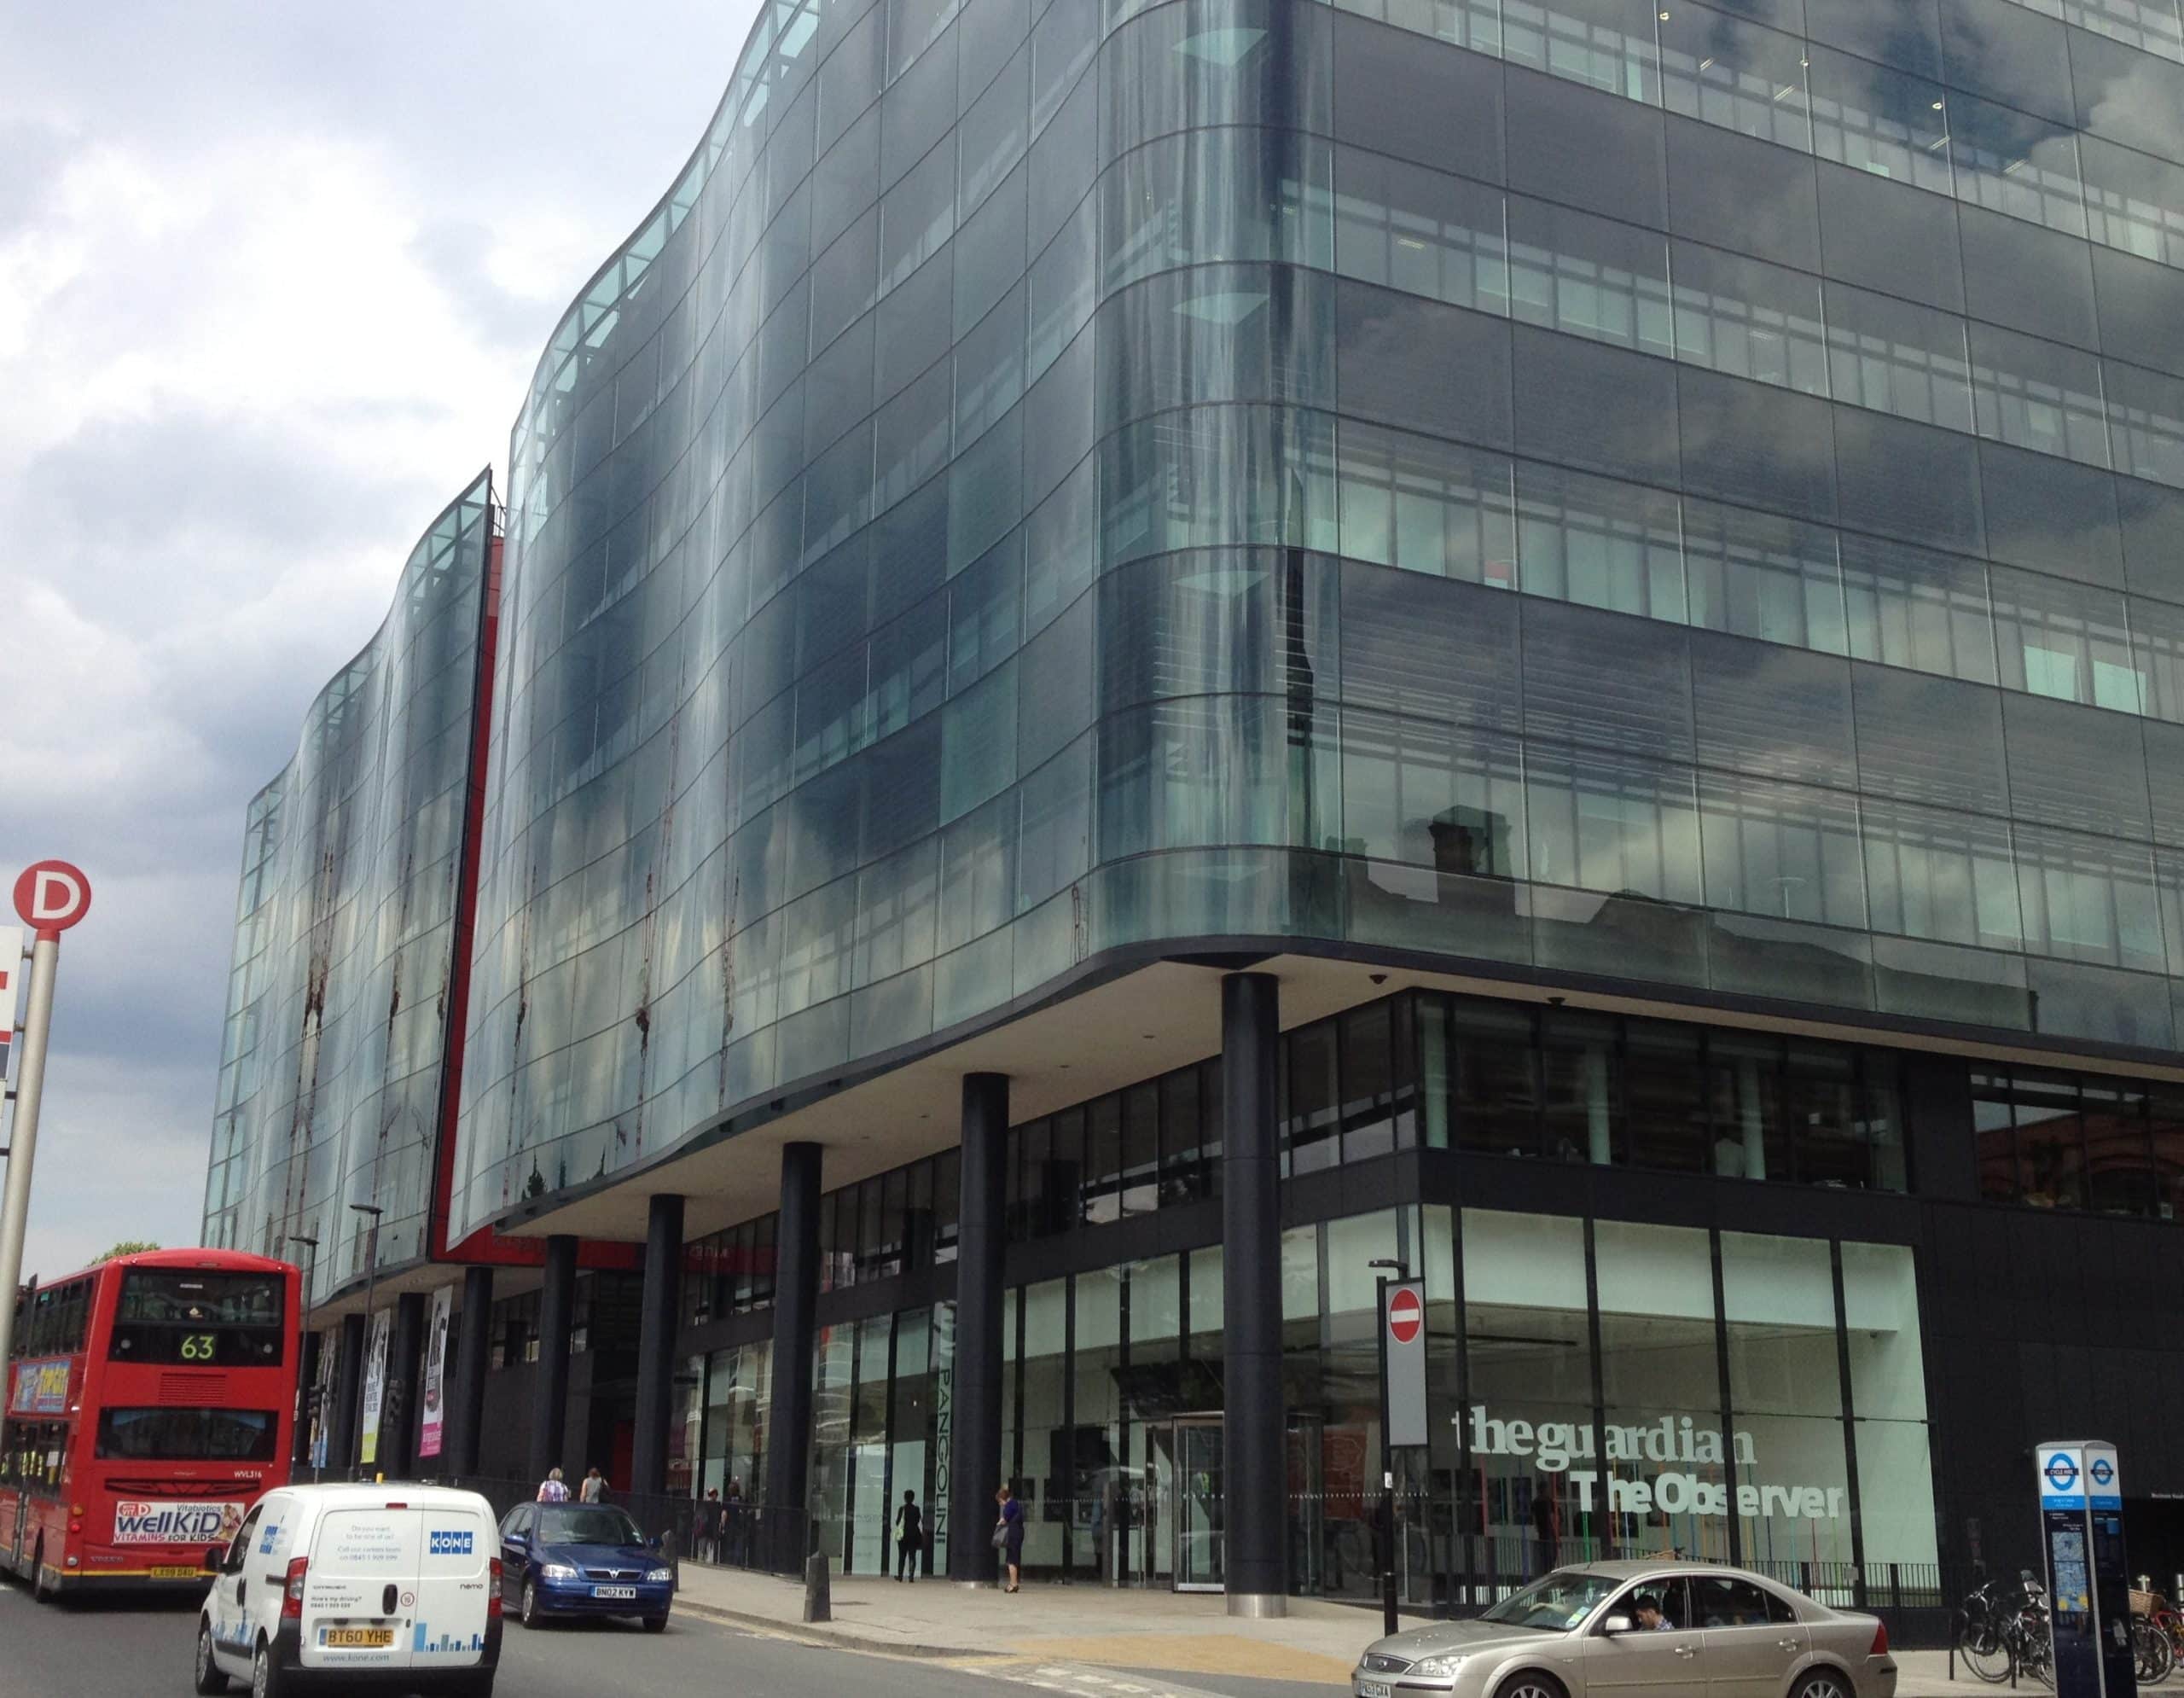 Le nouveau siège du Guardian inauguré en 2014